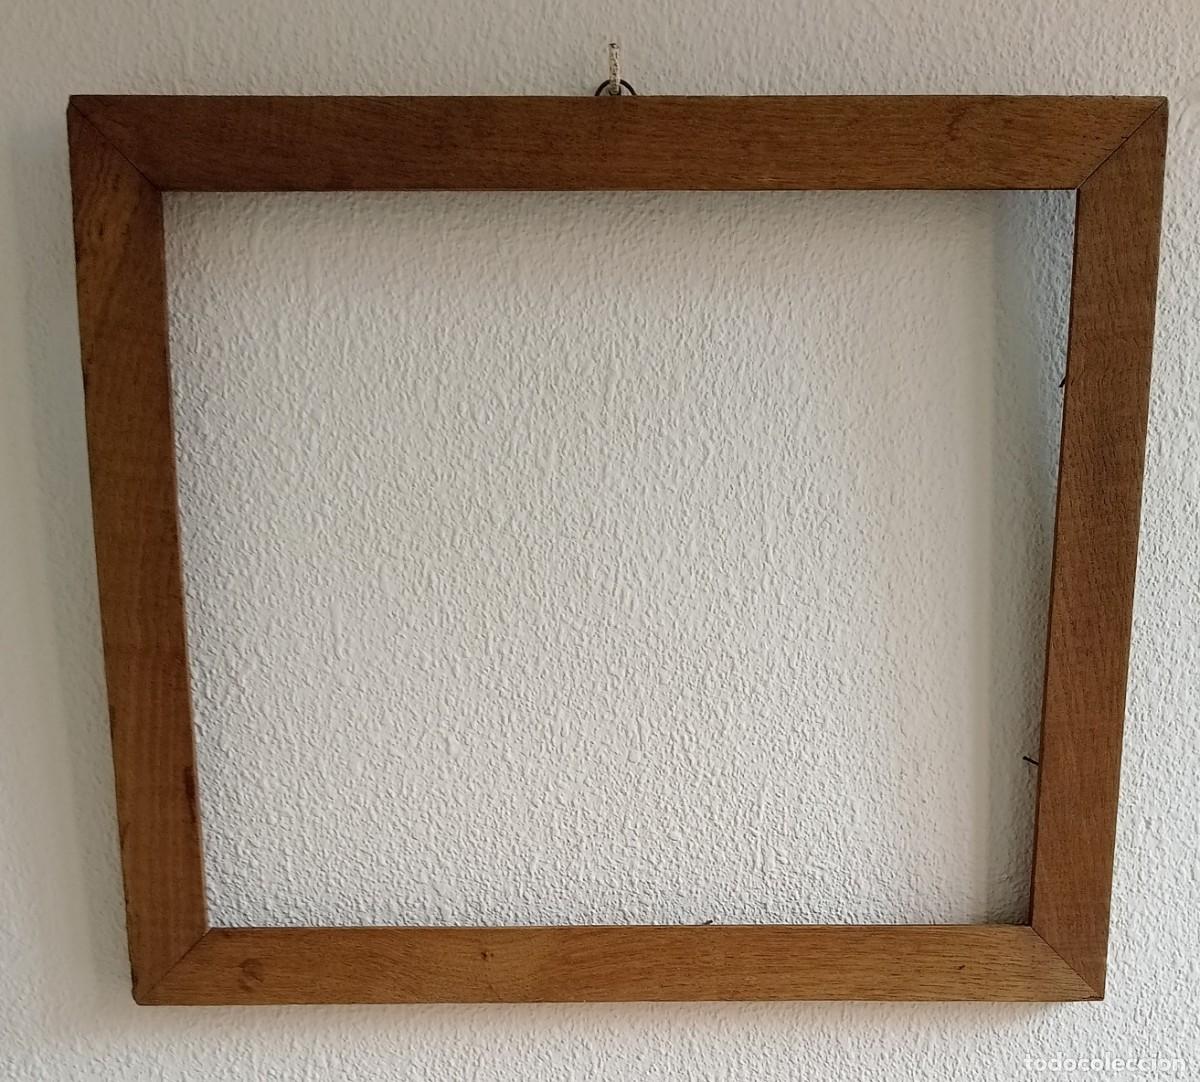 marco de madera con paspartú para colgar años 7 - Compra venta en  todocoleccion